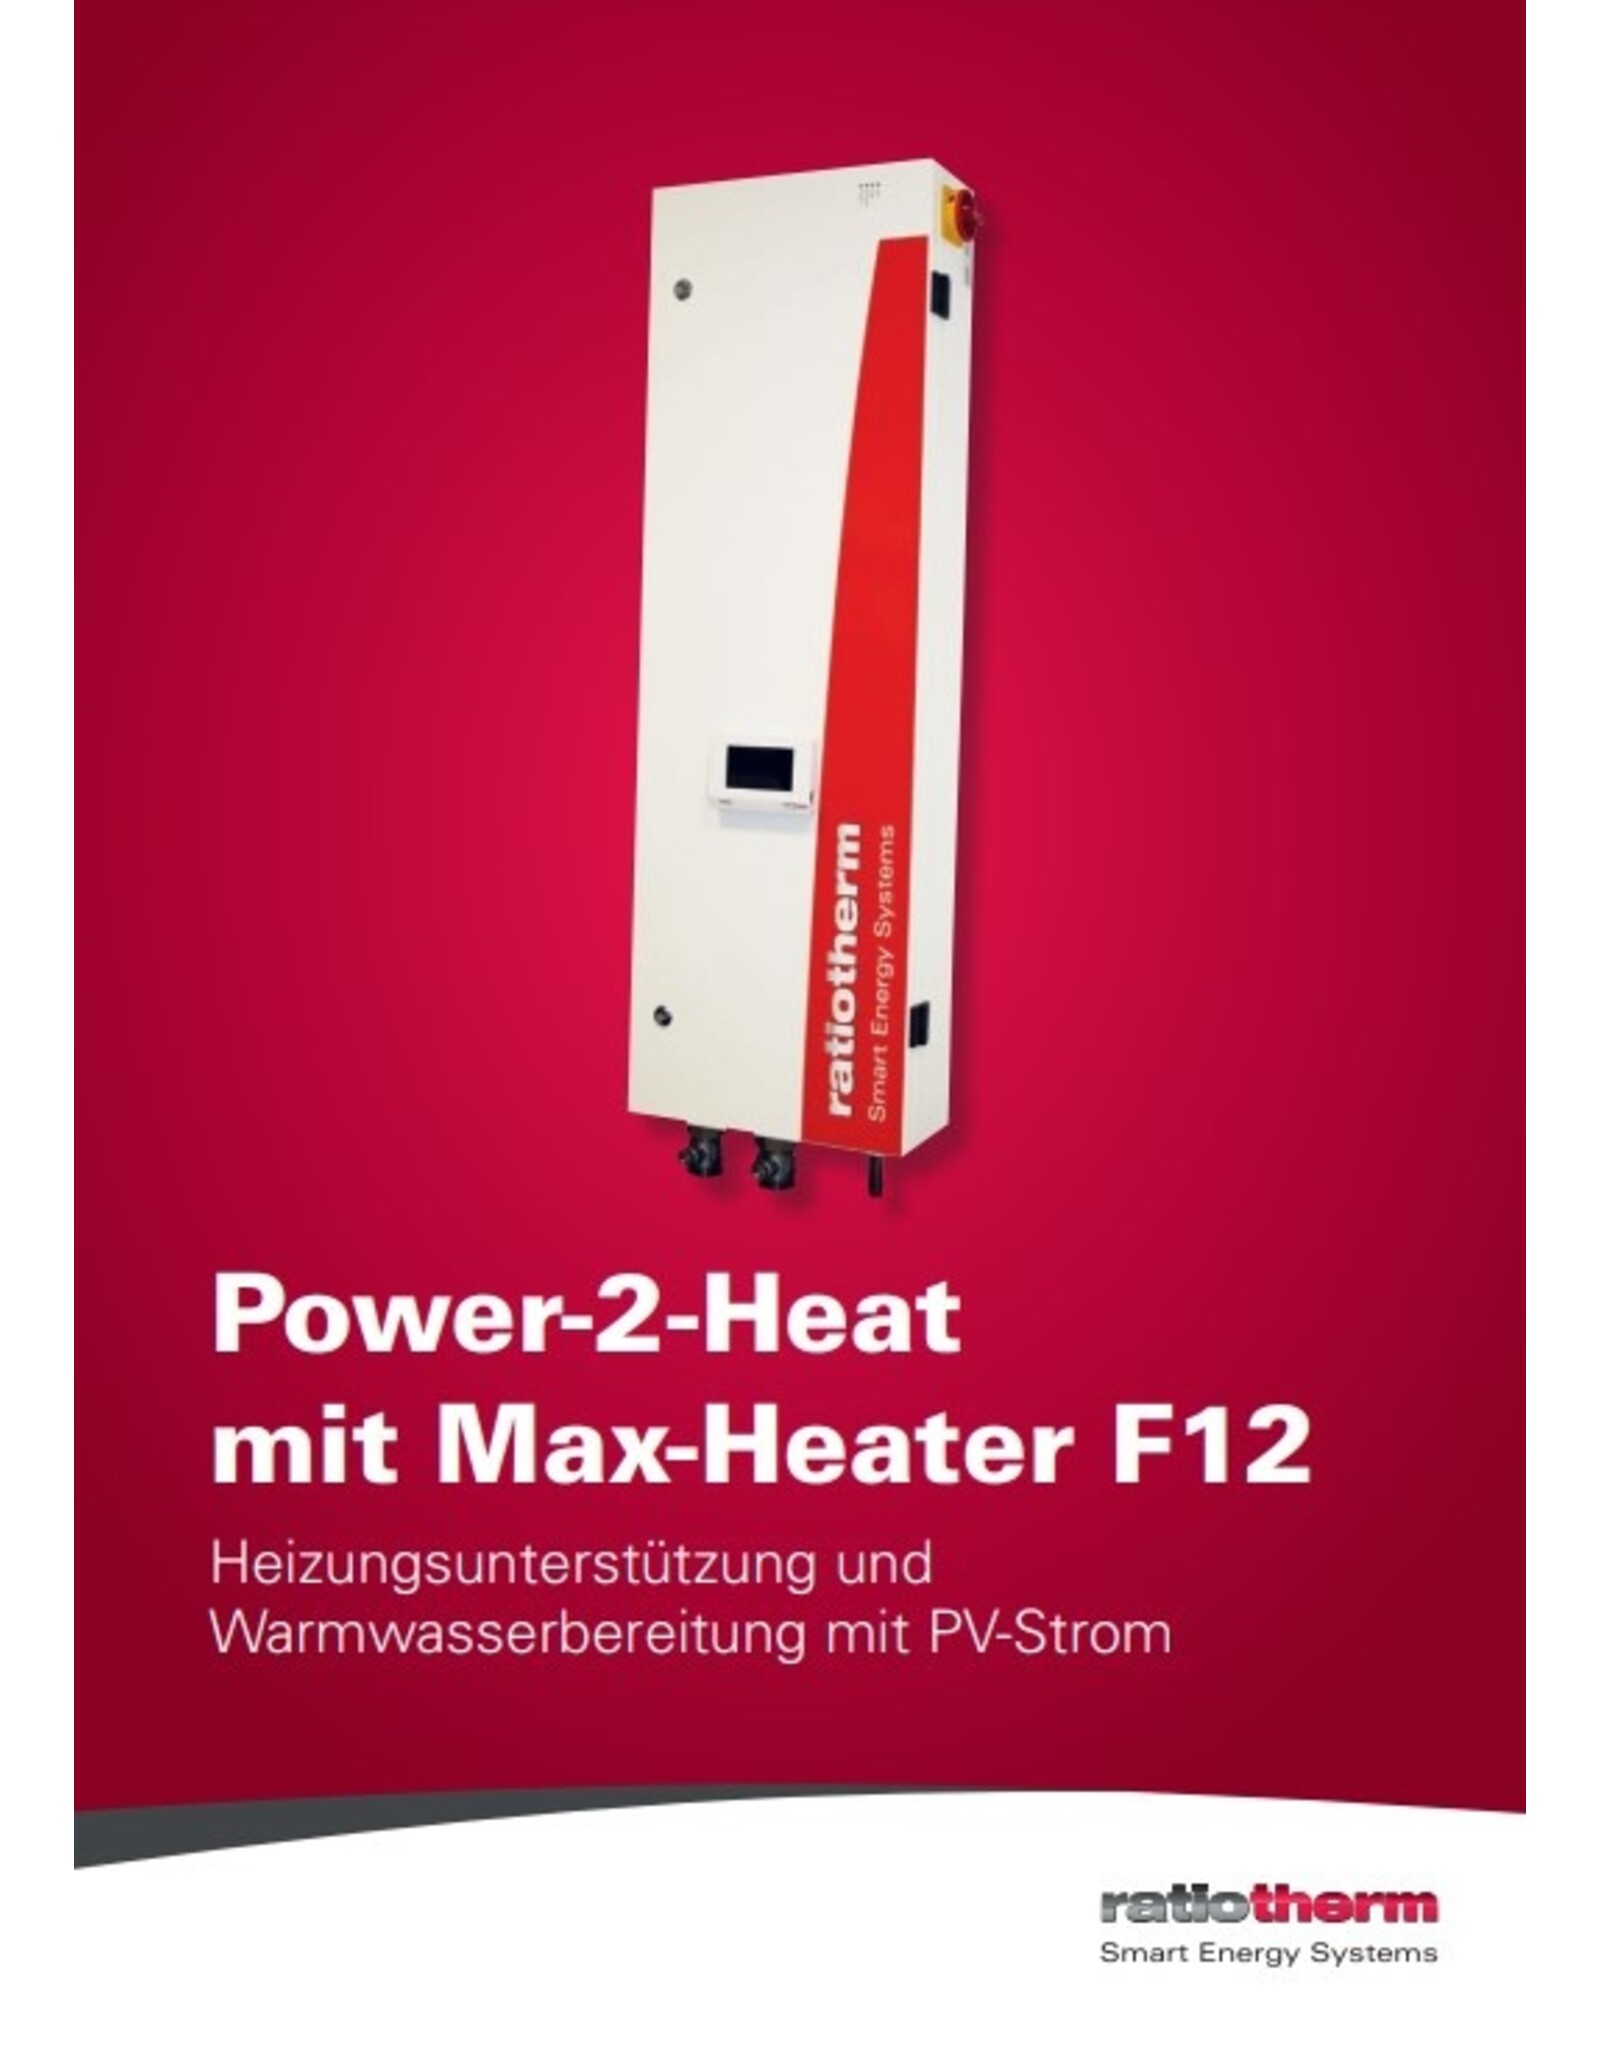 ratiotherm Flyer - Max-Heater für Partnerbetriebe kostenfrei - Copy